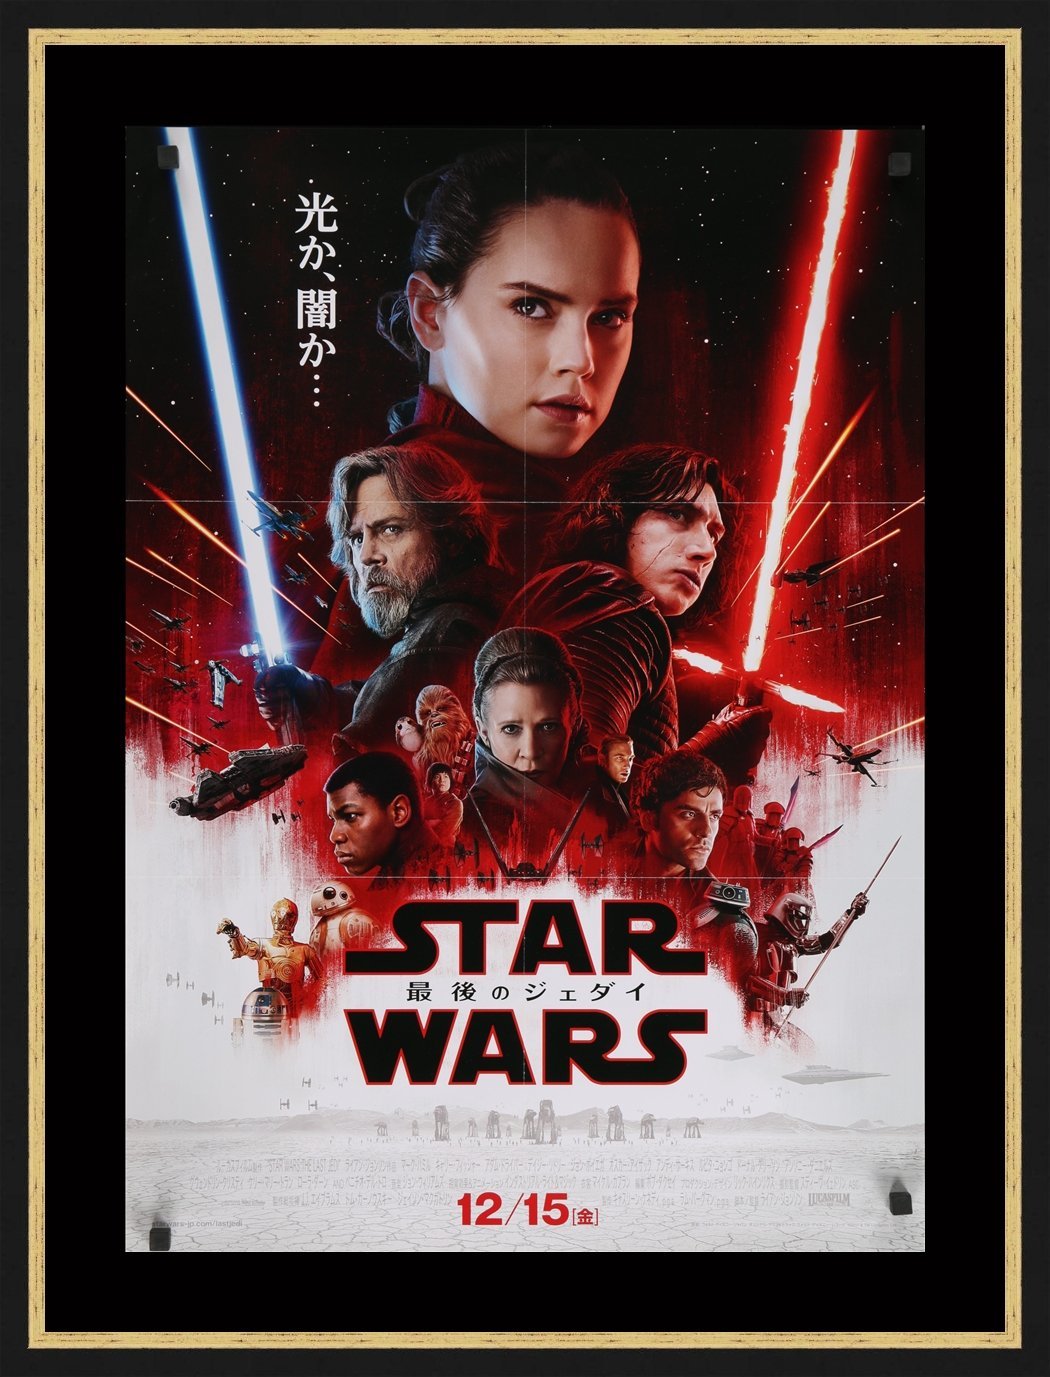 Star Wars The Last Jedi Movie Posters